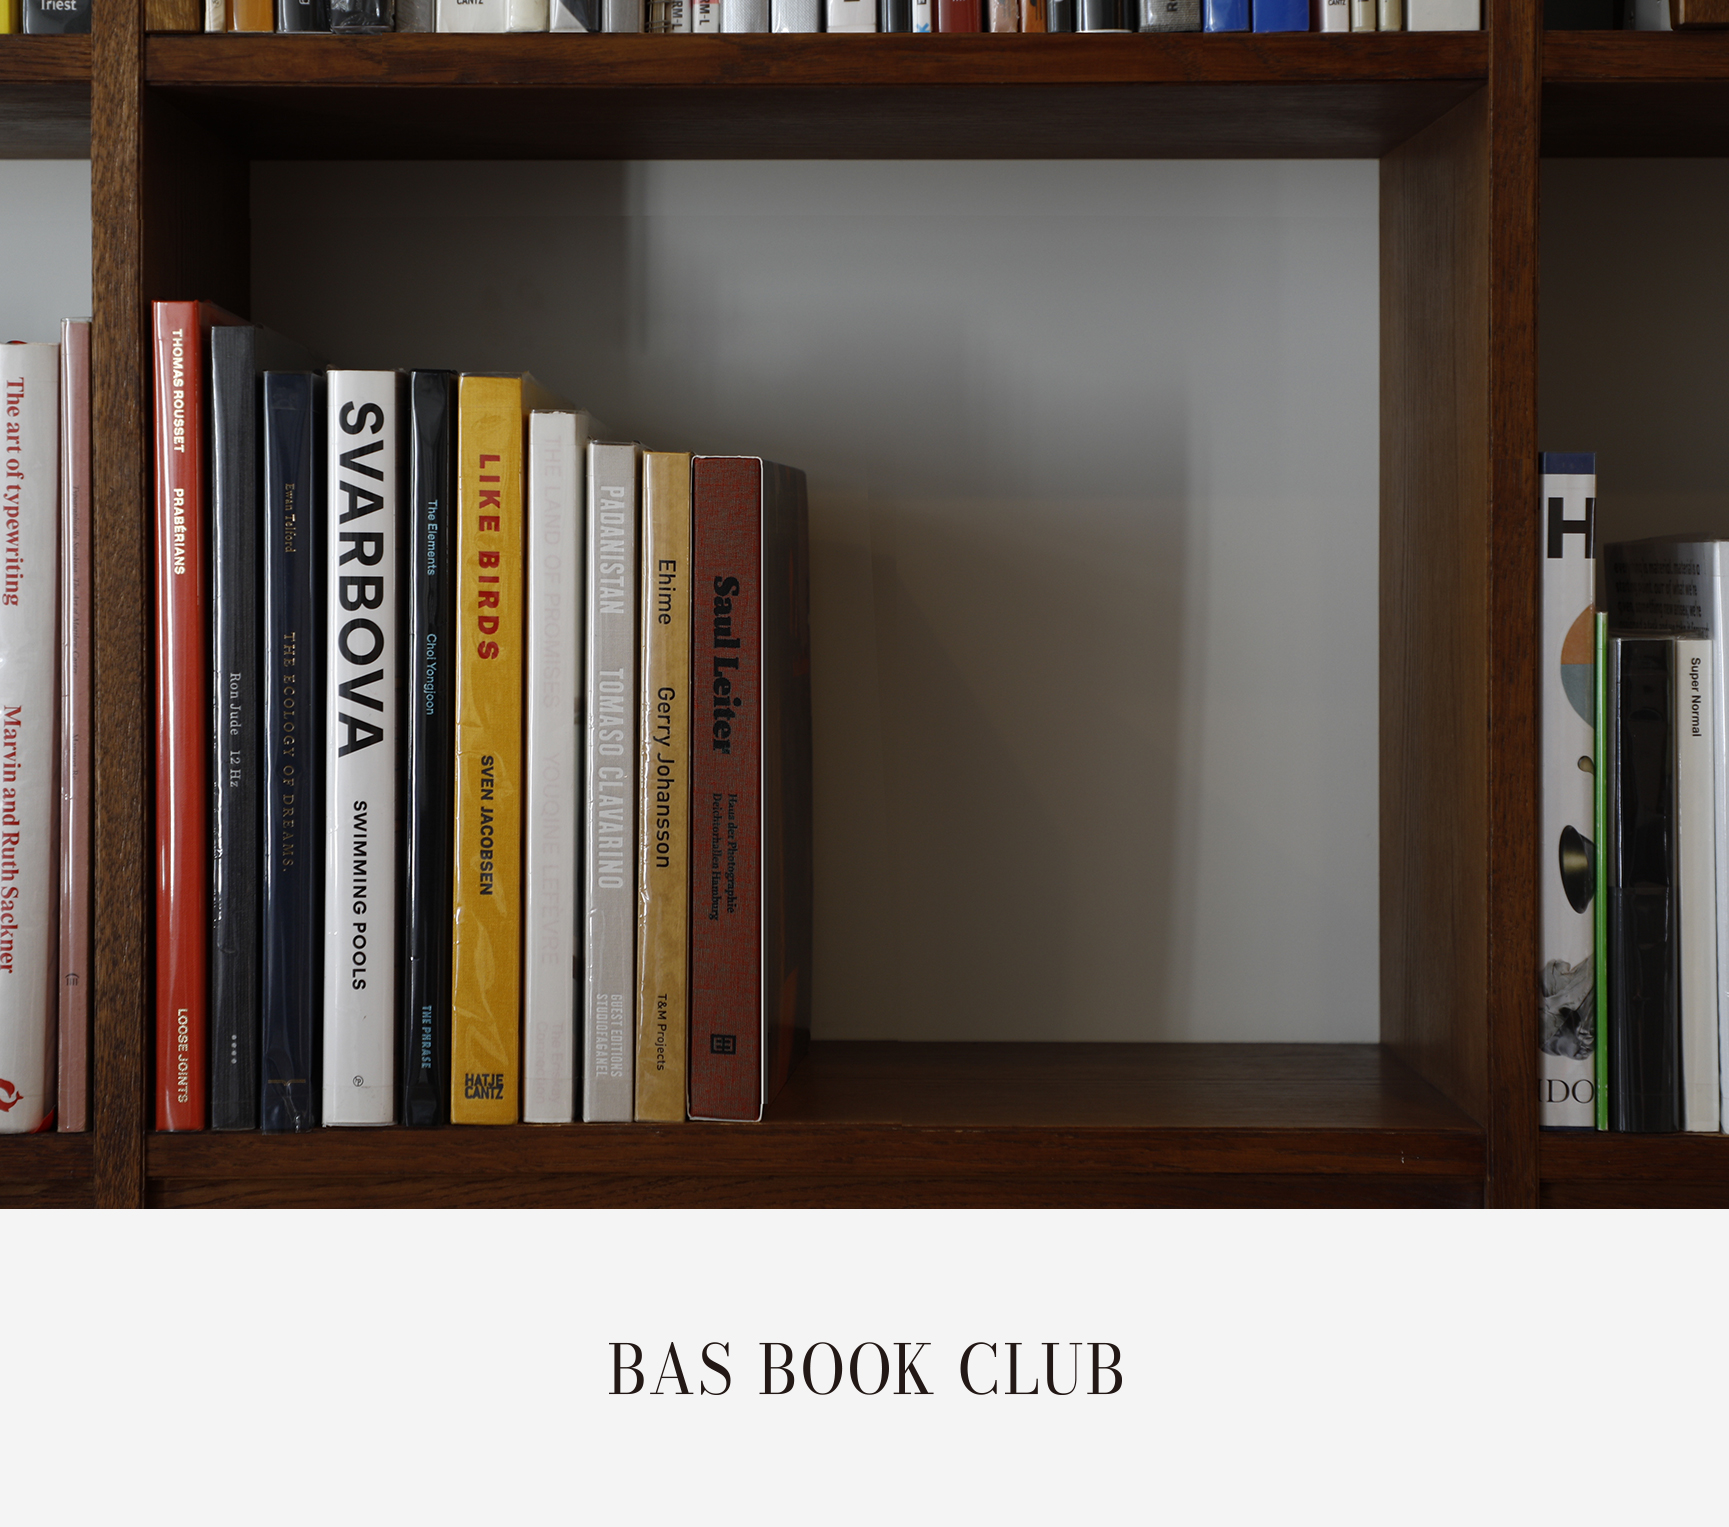 BAS BOOK CLUB